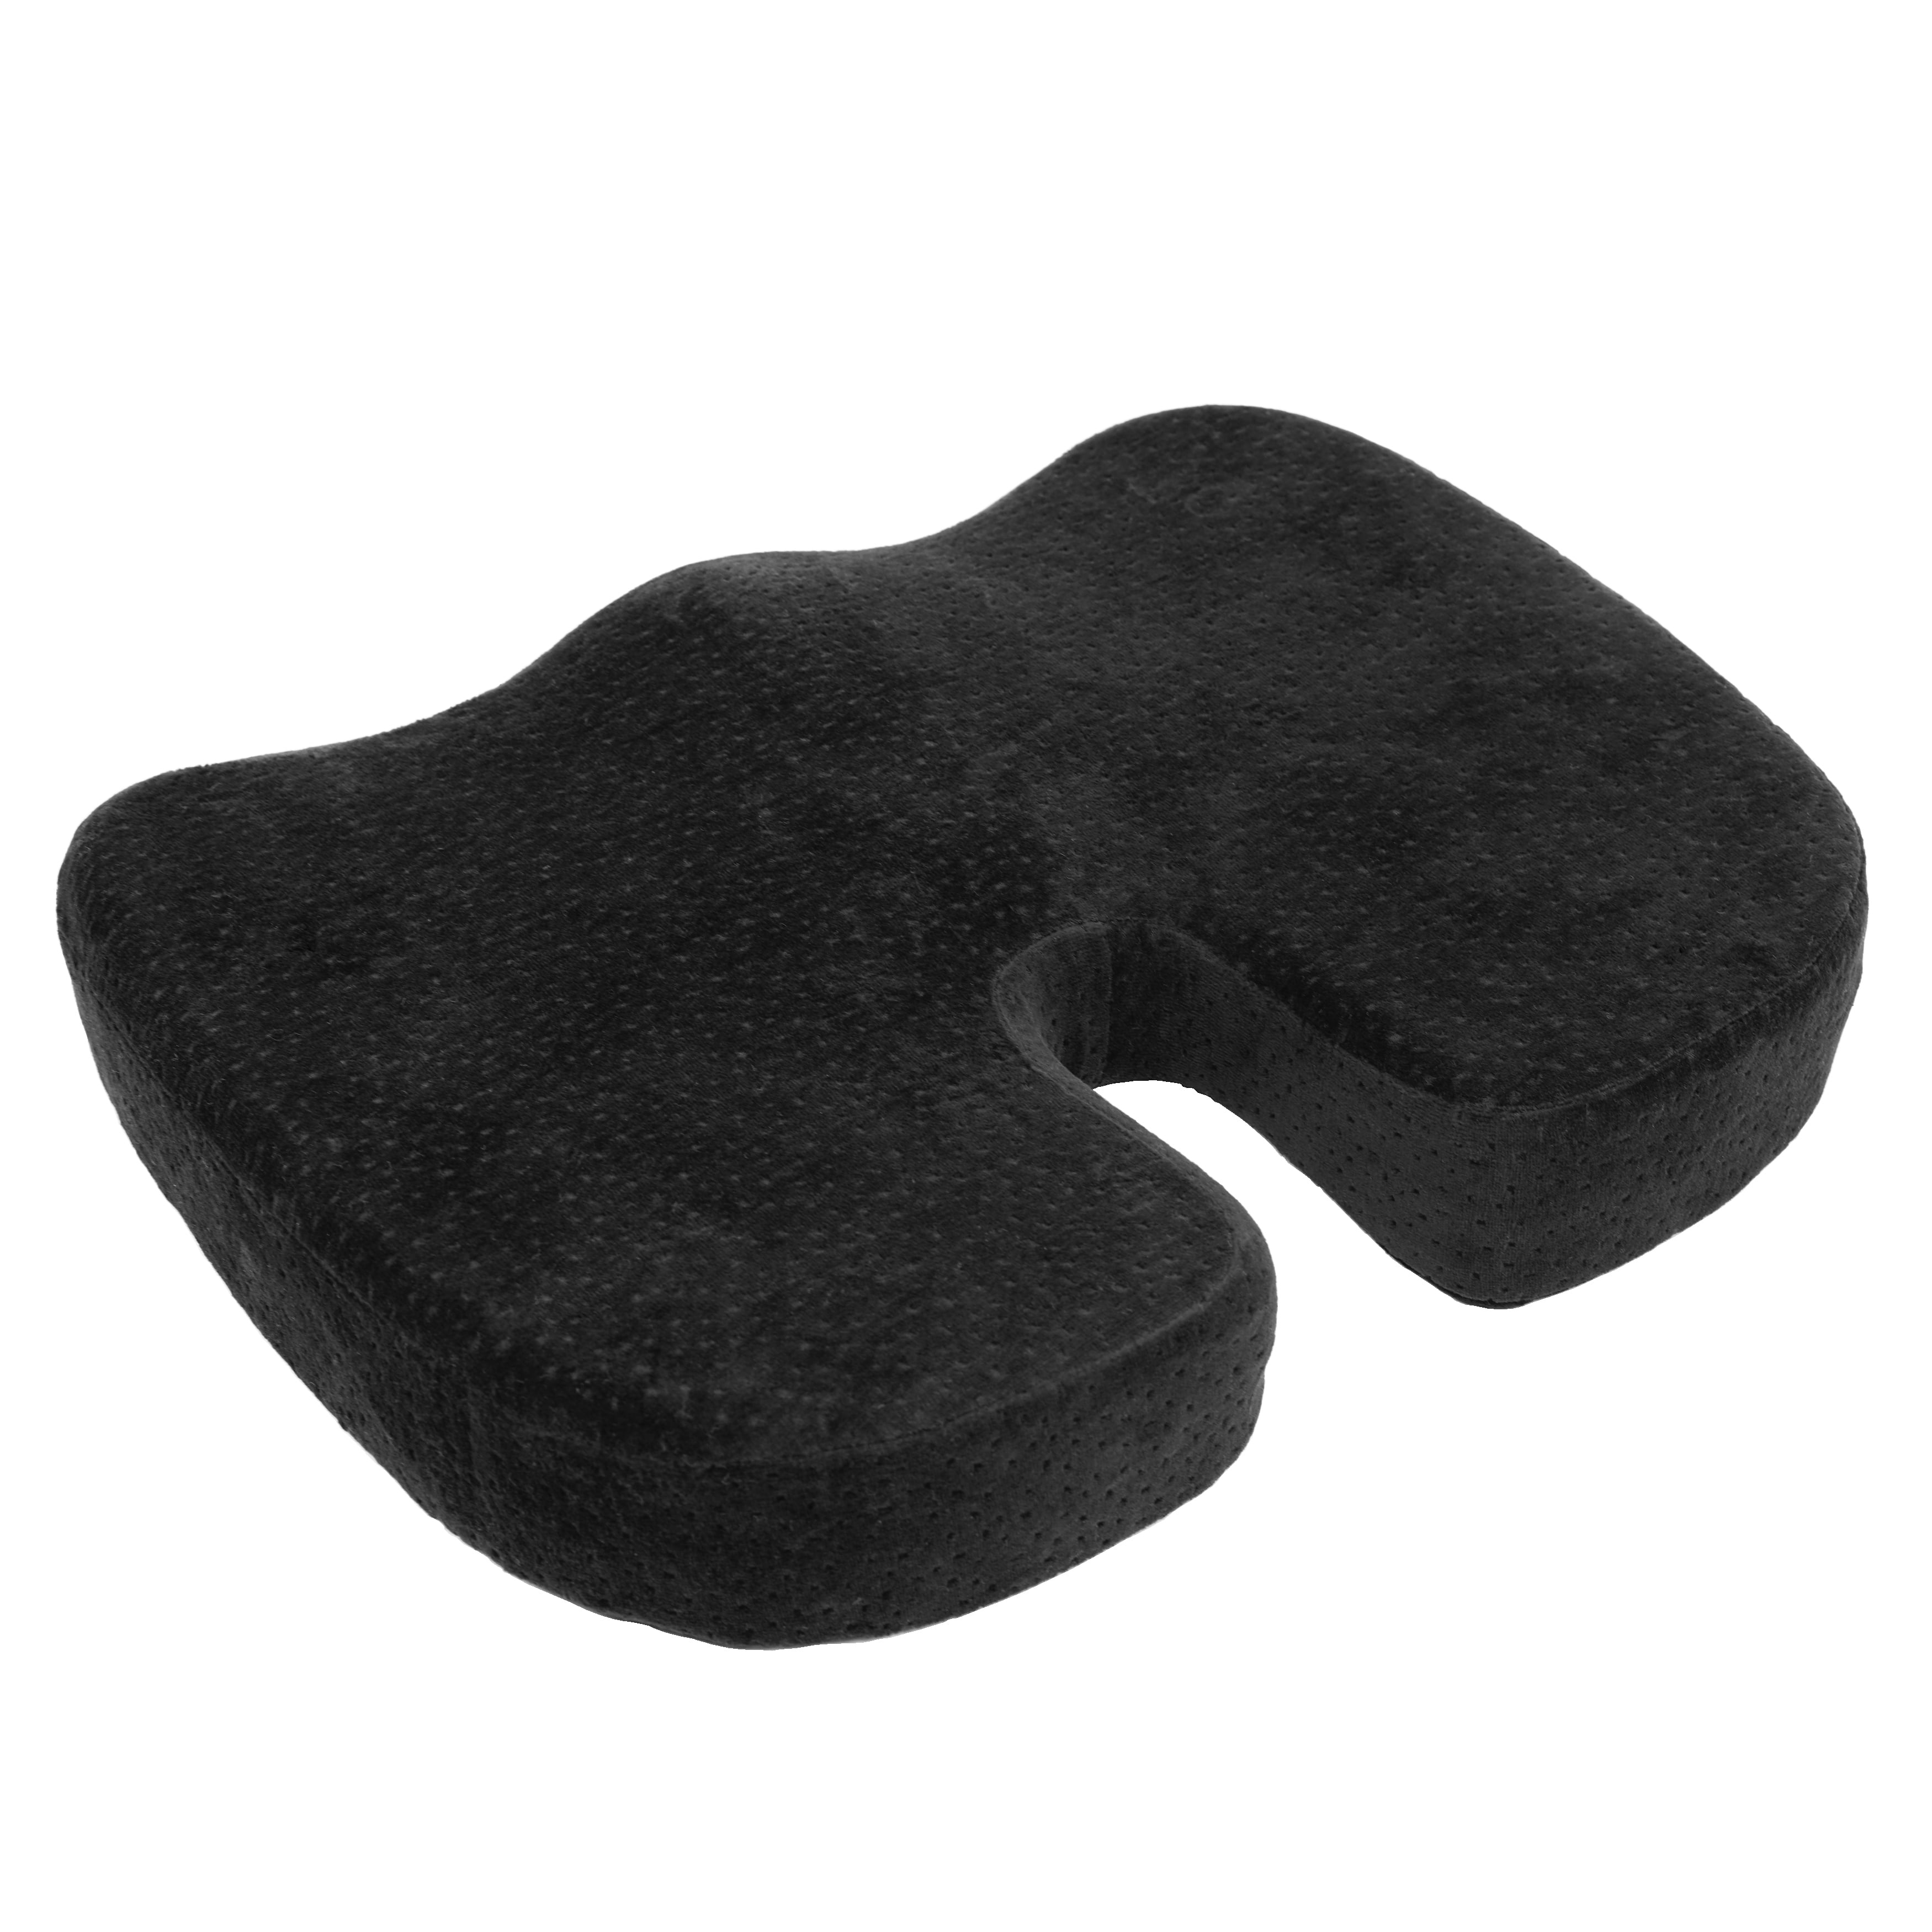 Black Orthopedically Back Designed Memory Foam Coccyx Cushion Seat